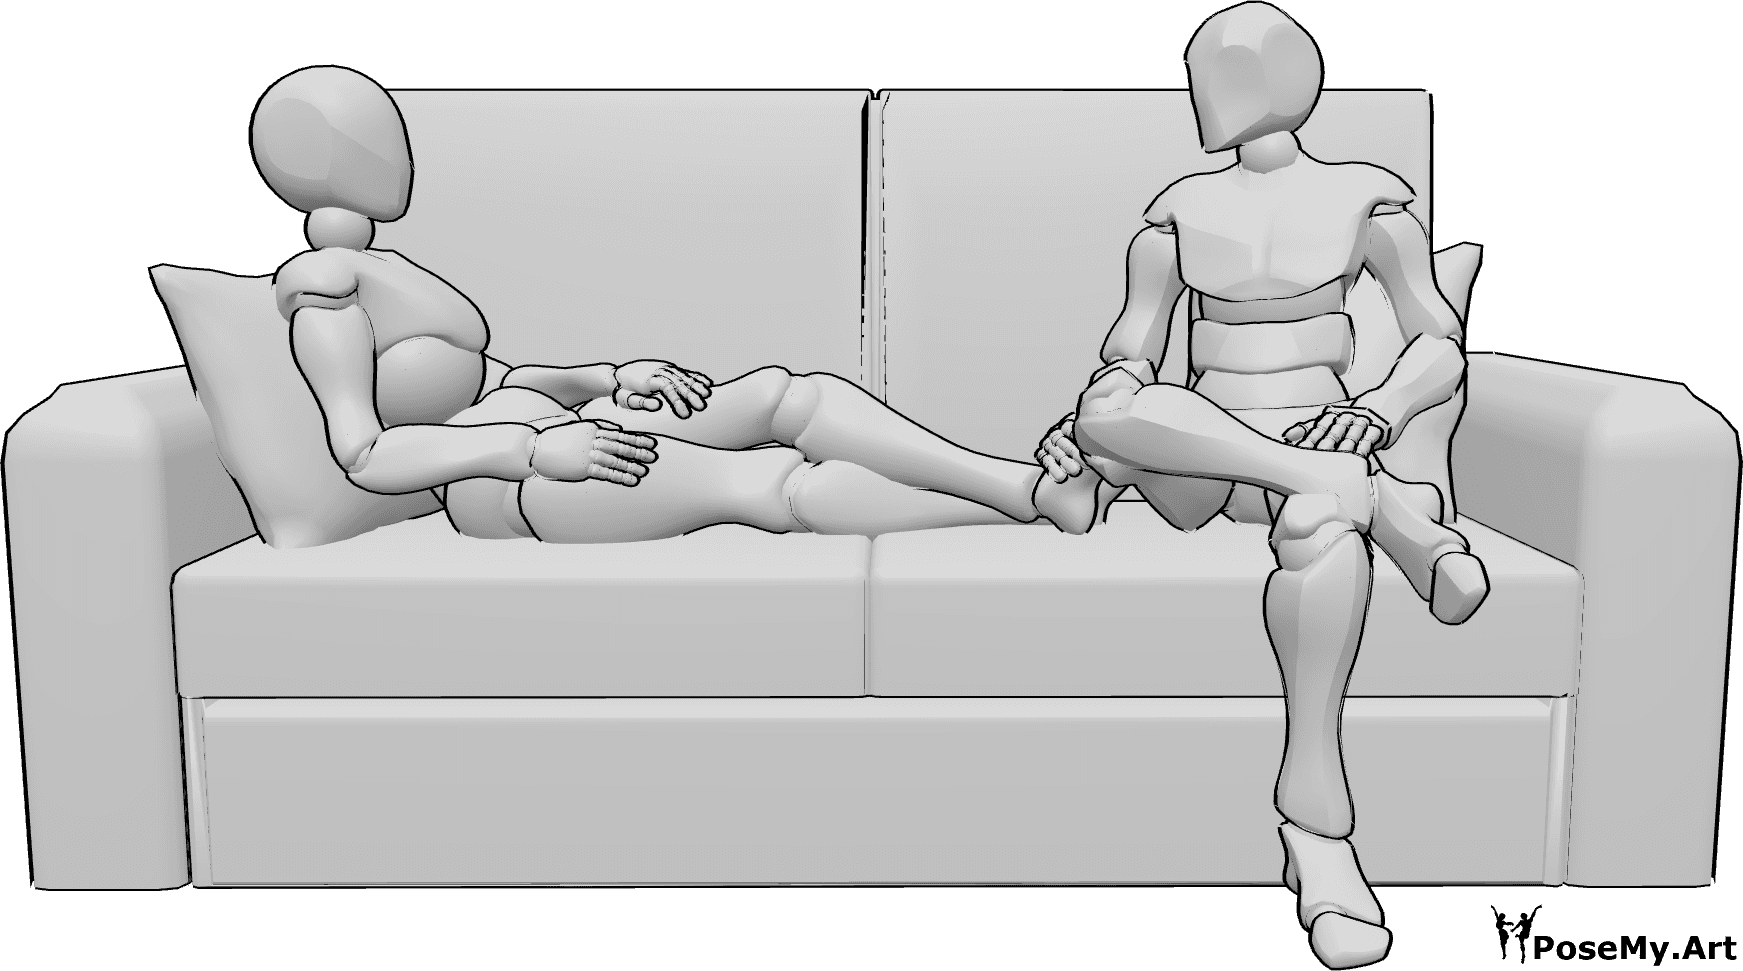 Referência de poses- Pose de homem sentado - A mulher está deitada no sofá, o homem está sentado ao lado dela, olham um para o outro